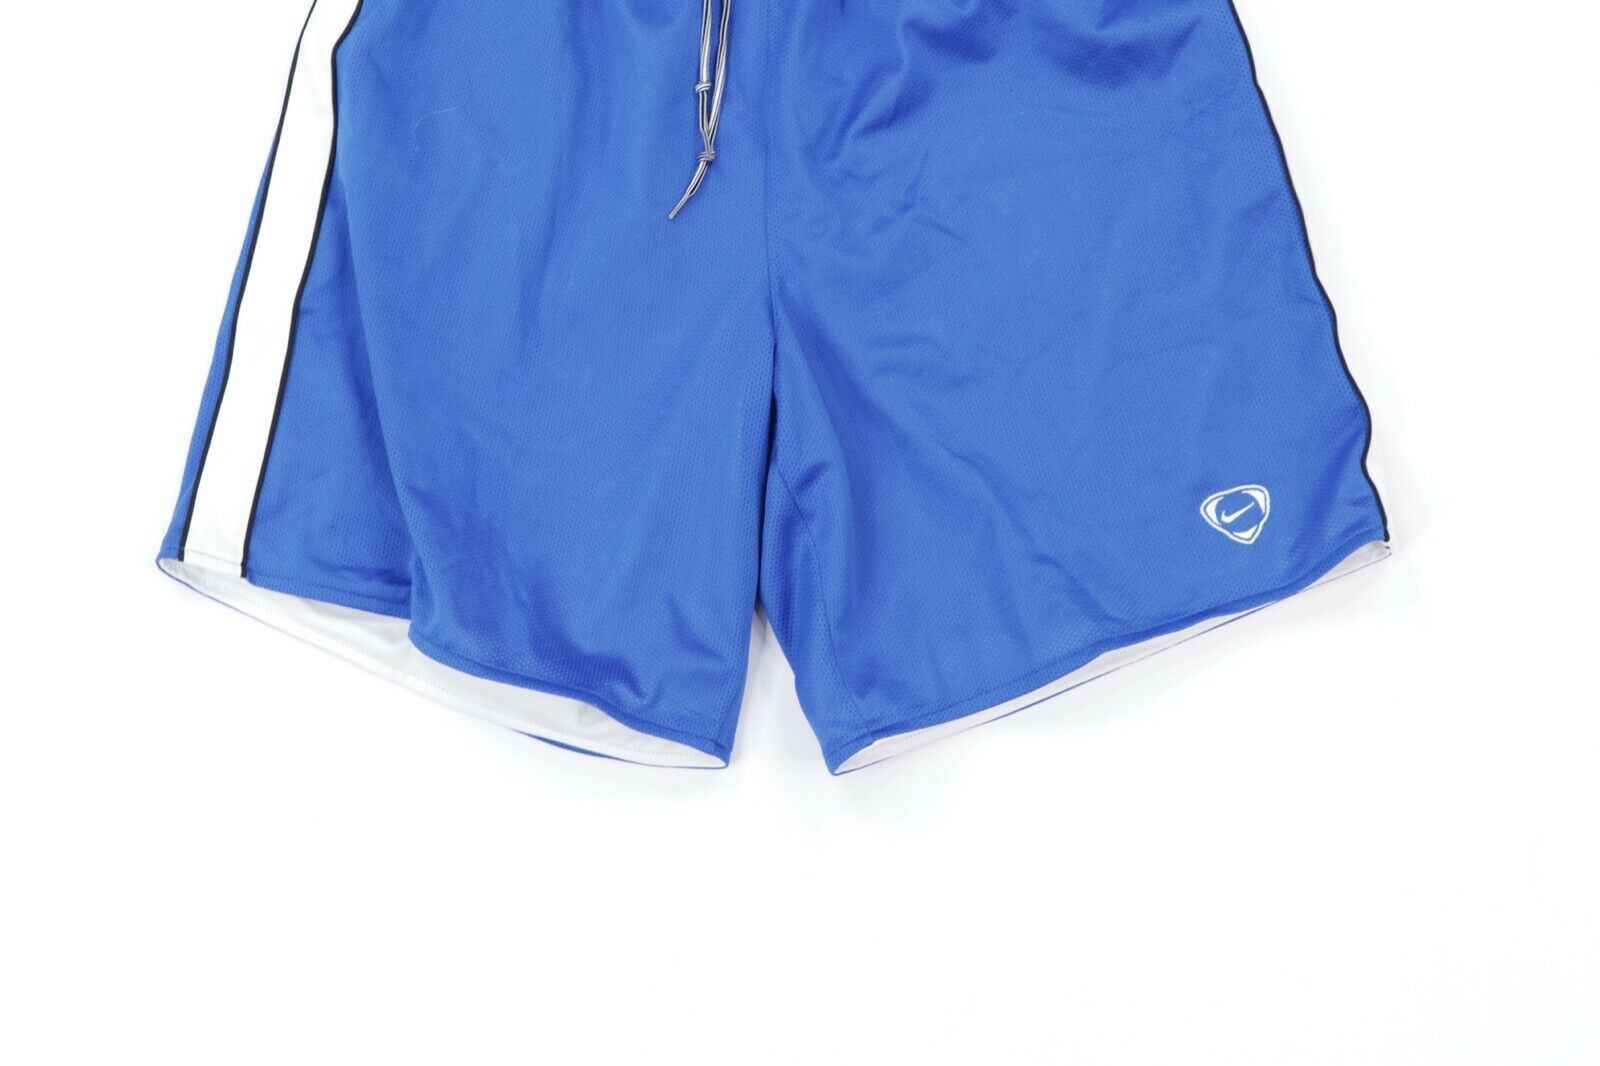 Nike Vintage Nike Total 90 Reversible Soccer Shorts Blue White M Size US 30 / EU 46 - 6 Thumbnail